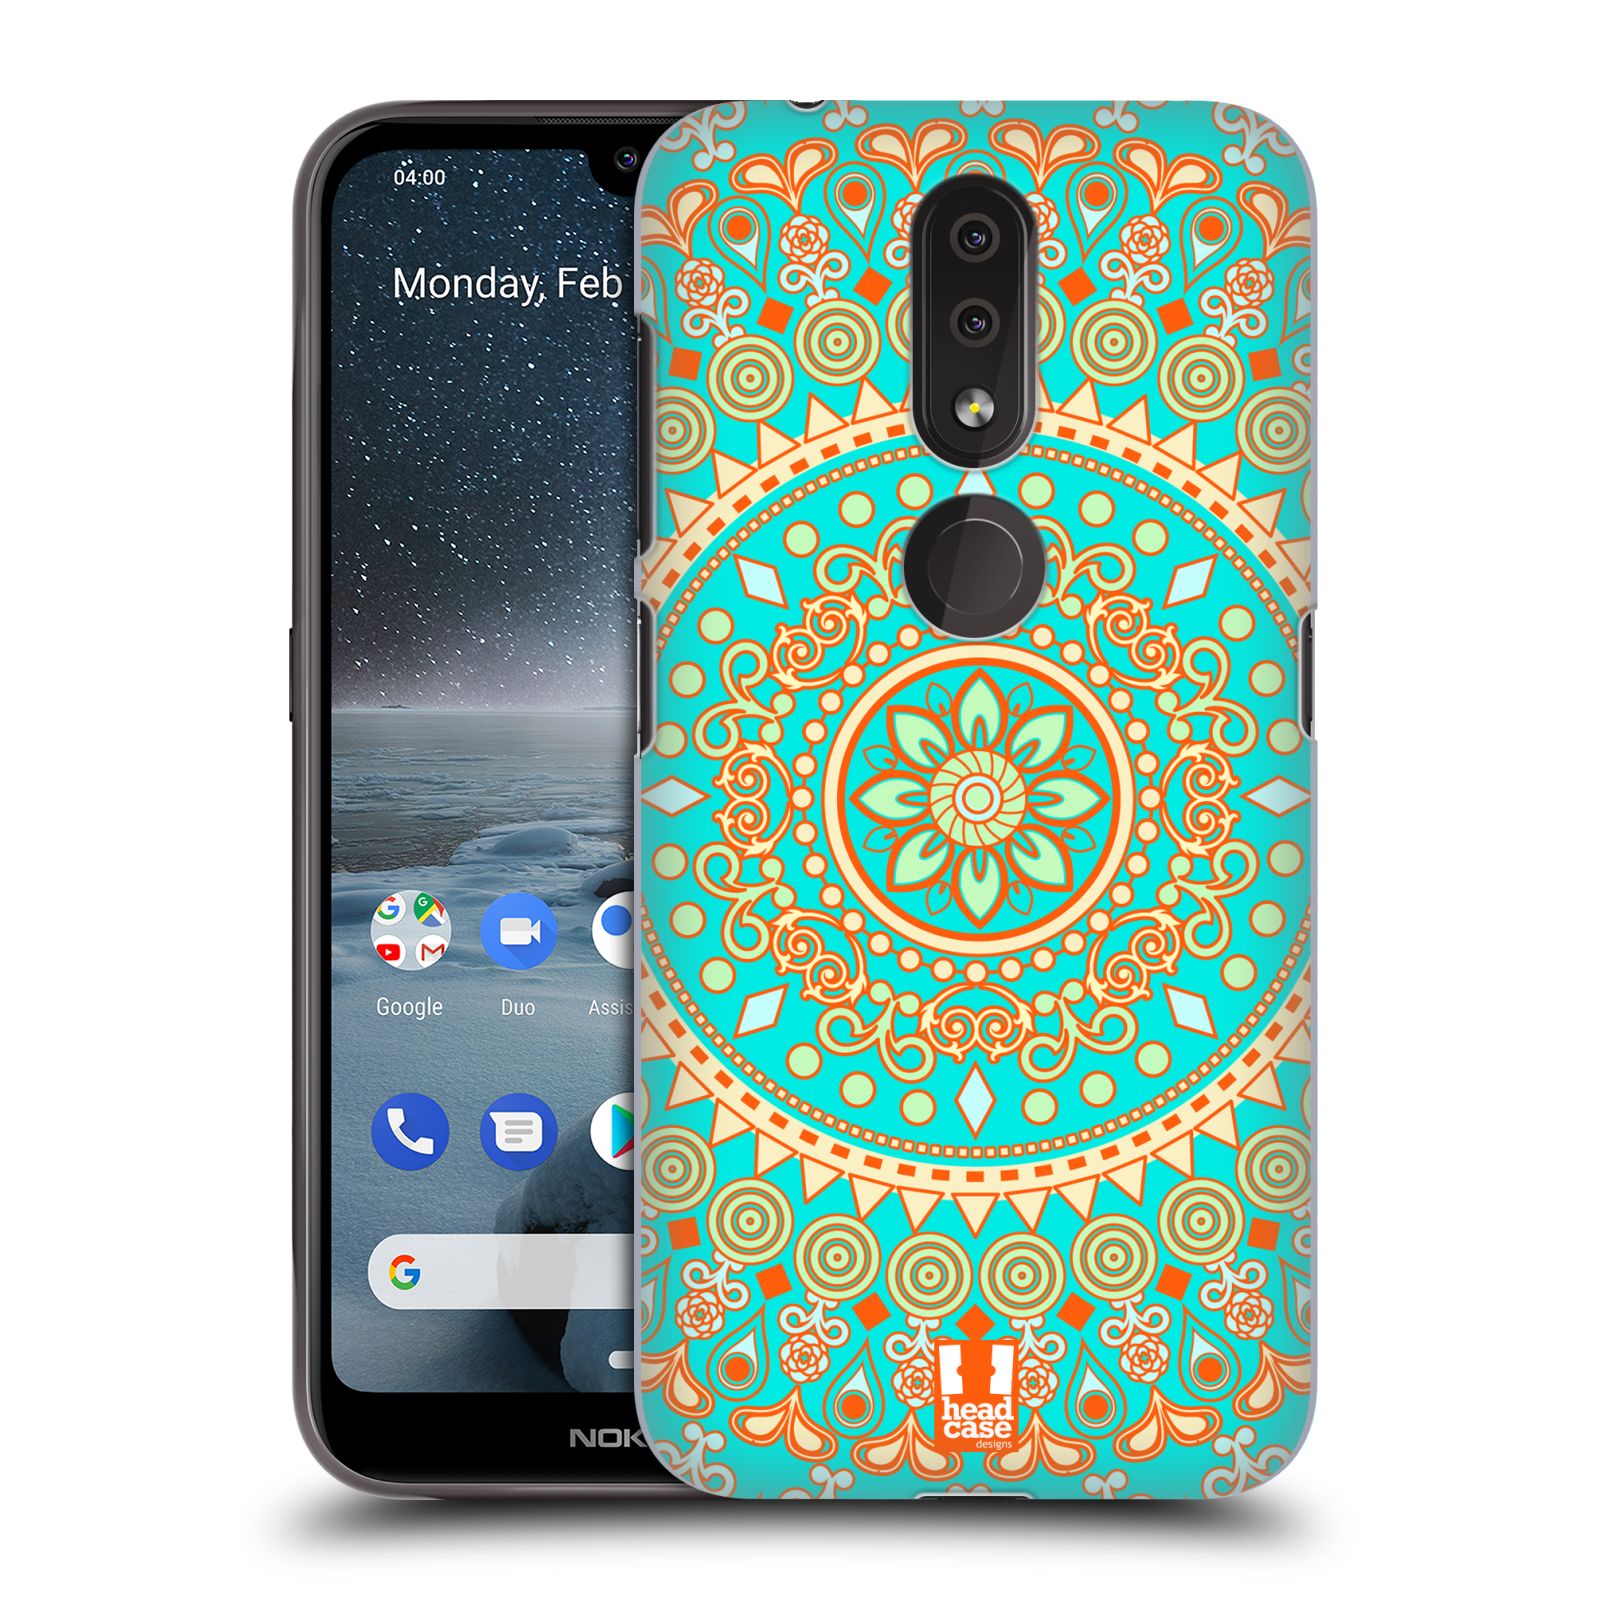 Pouzdro na mobil Nokia 4.2 - HEAD CASE - vzor Indie Mandala slunce barevný motiv TYRKYSOVÁ, ZELENÁ